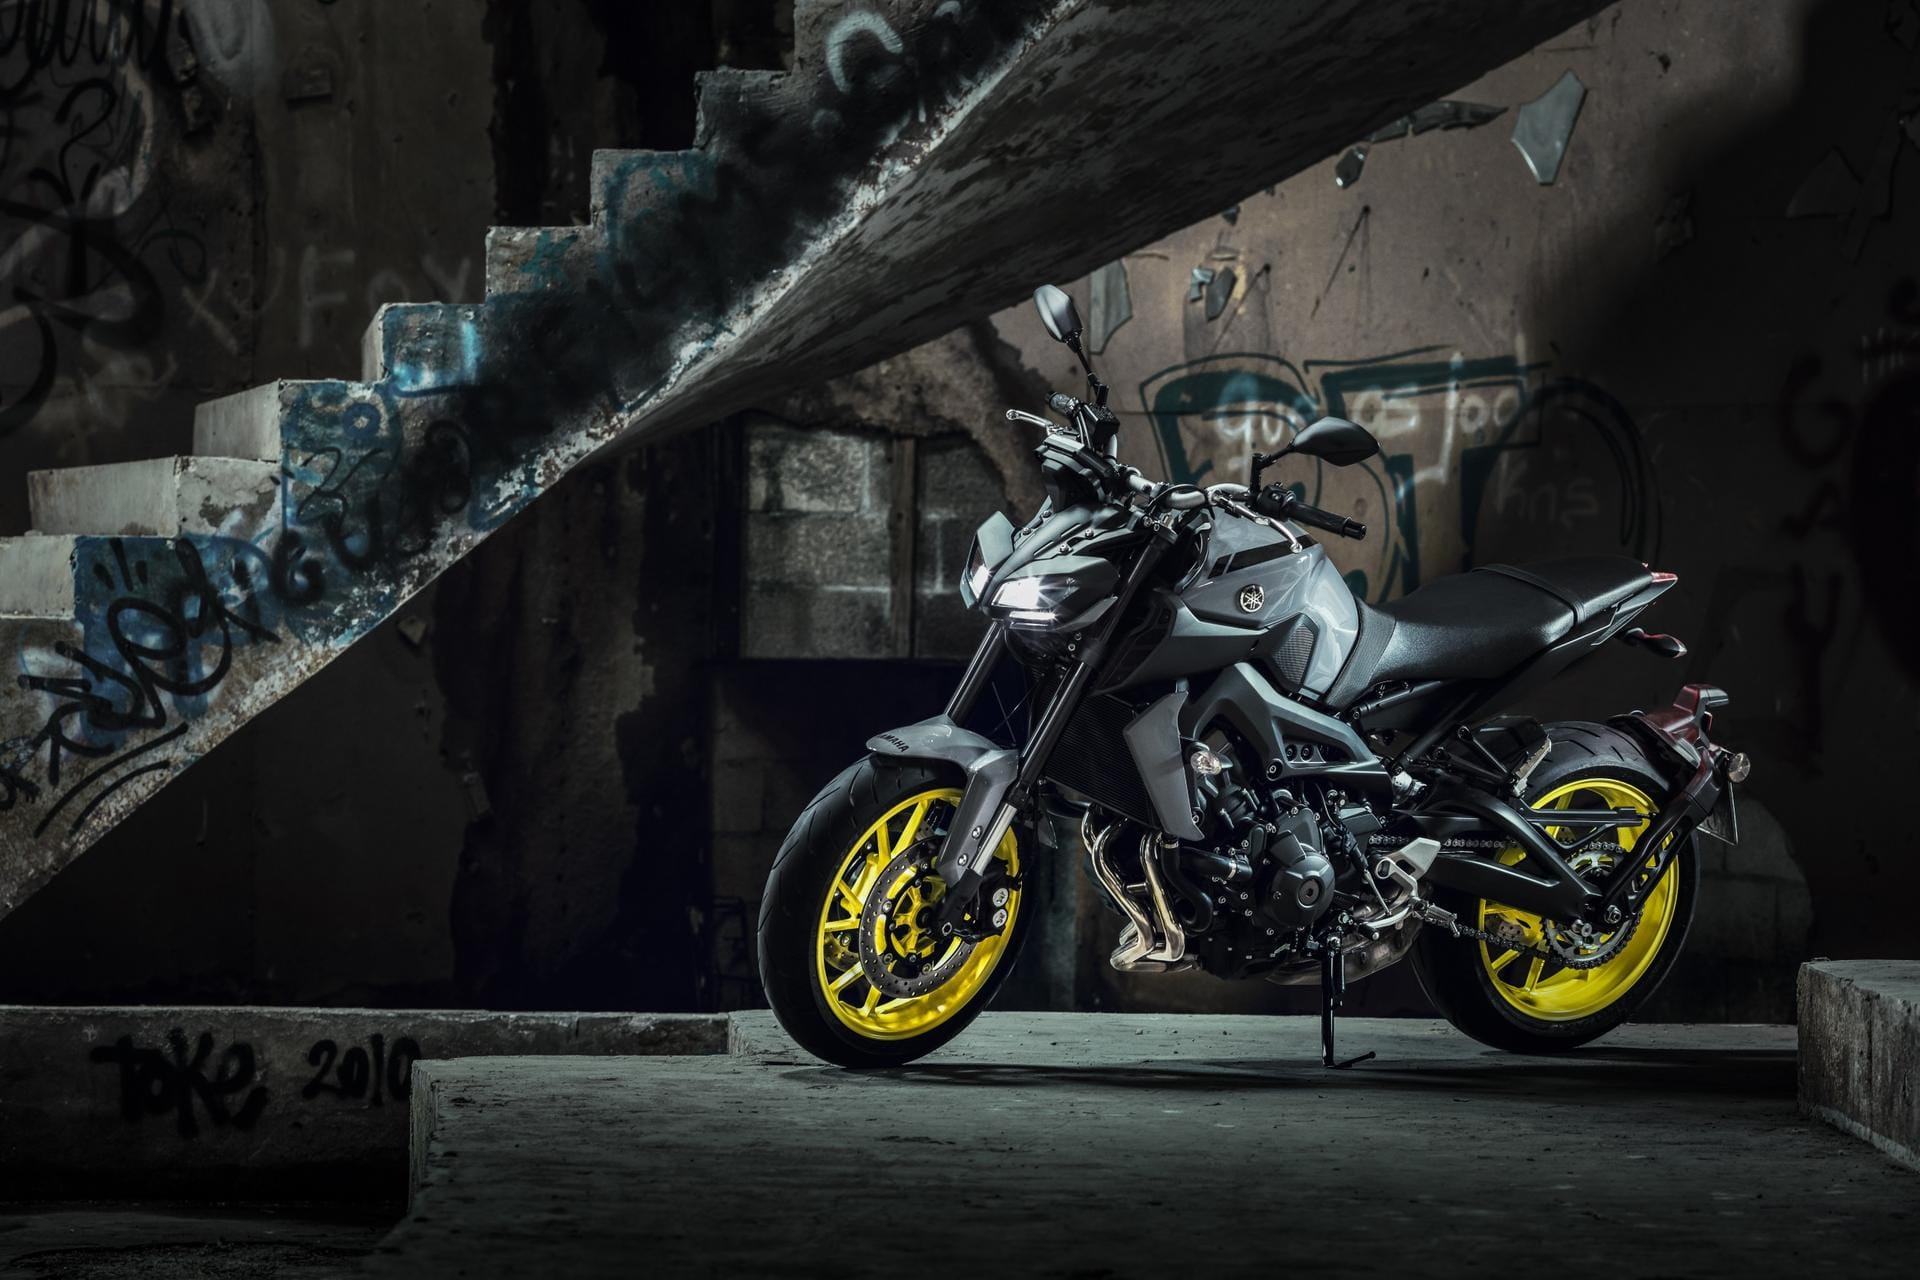 Die Yamaha MT-09 ist höchst vernünftig konfiguriert und mit knapp 9000 Euro zudem äußerst preiswert.